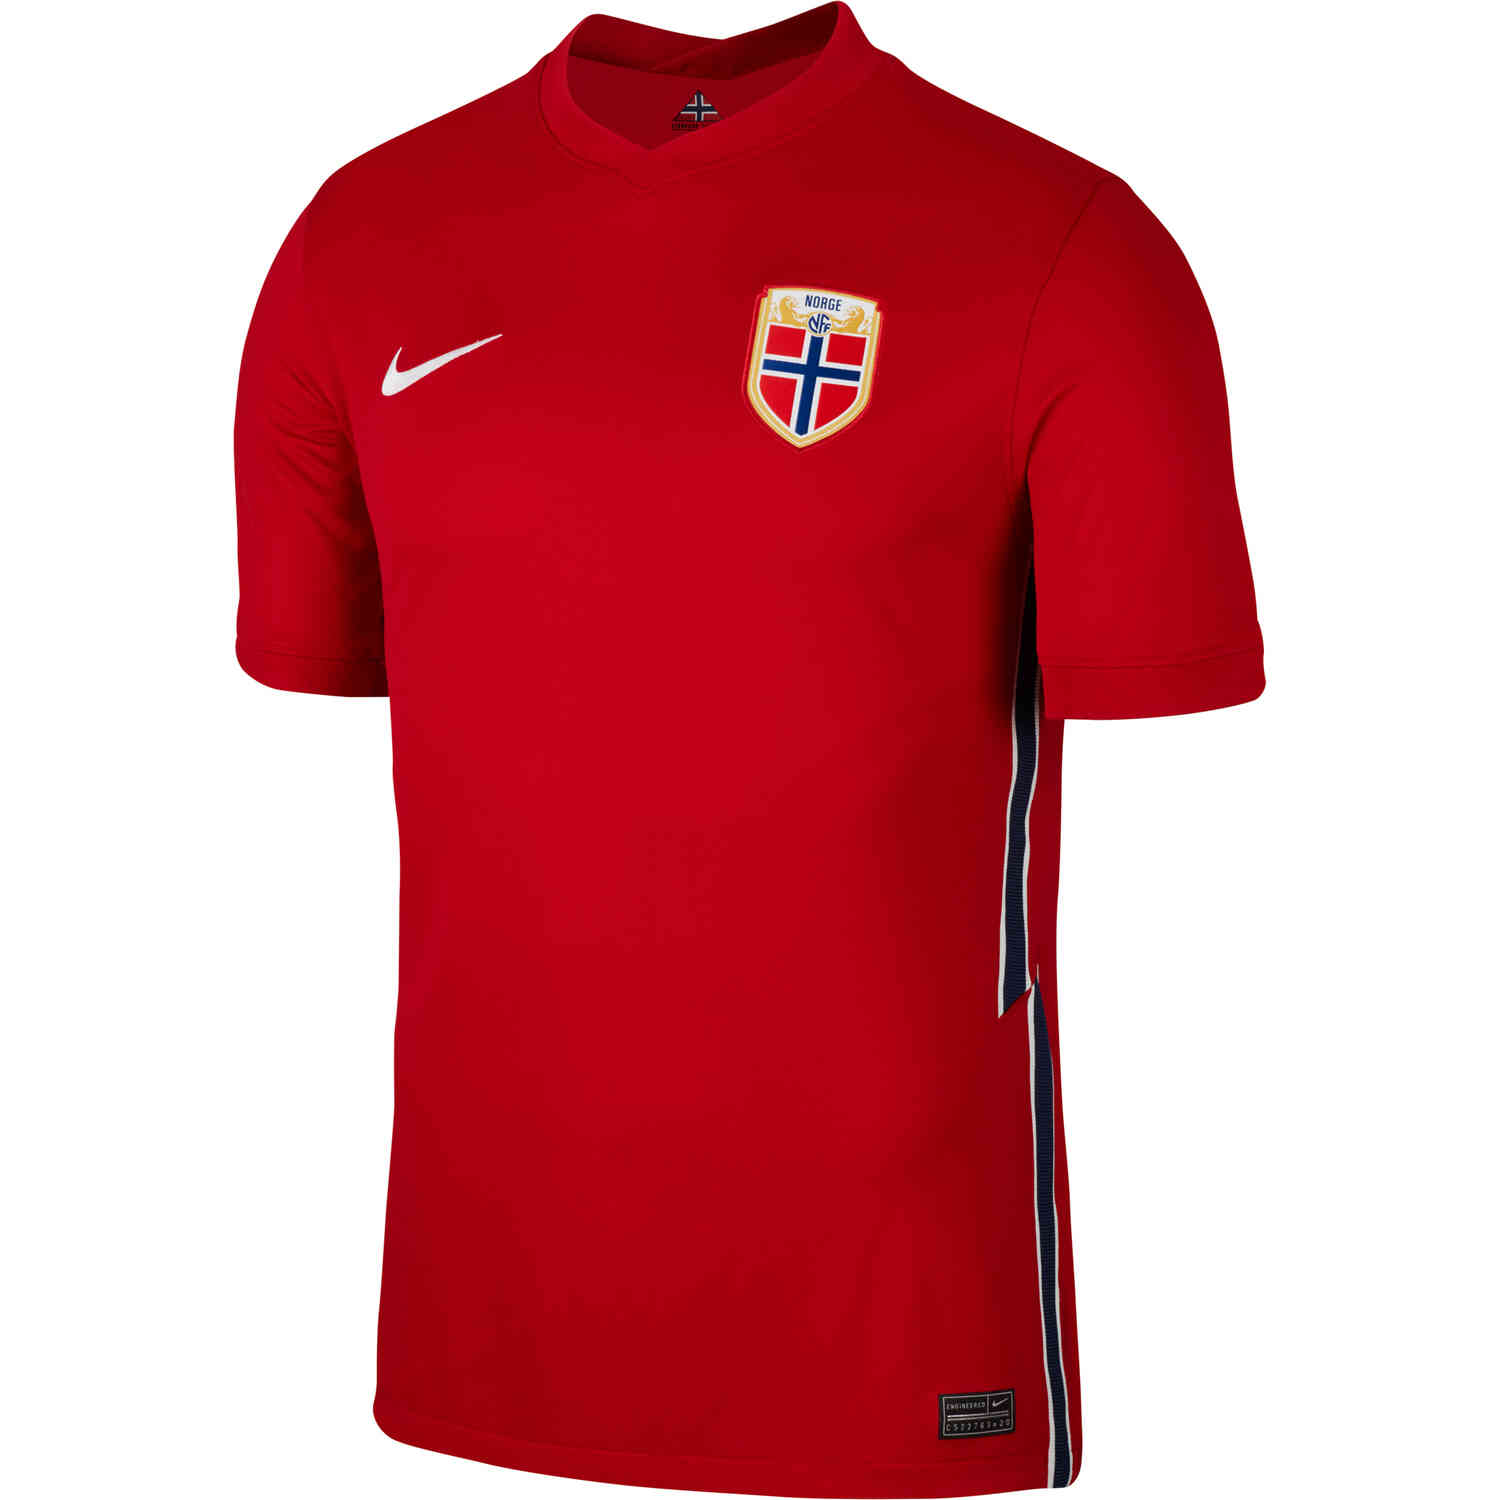 2020 Nike Norway Home Jersey - SoccerPro